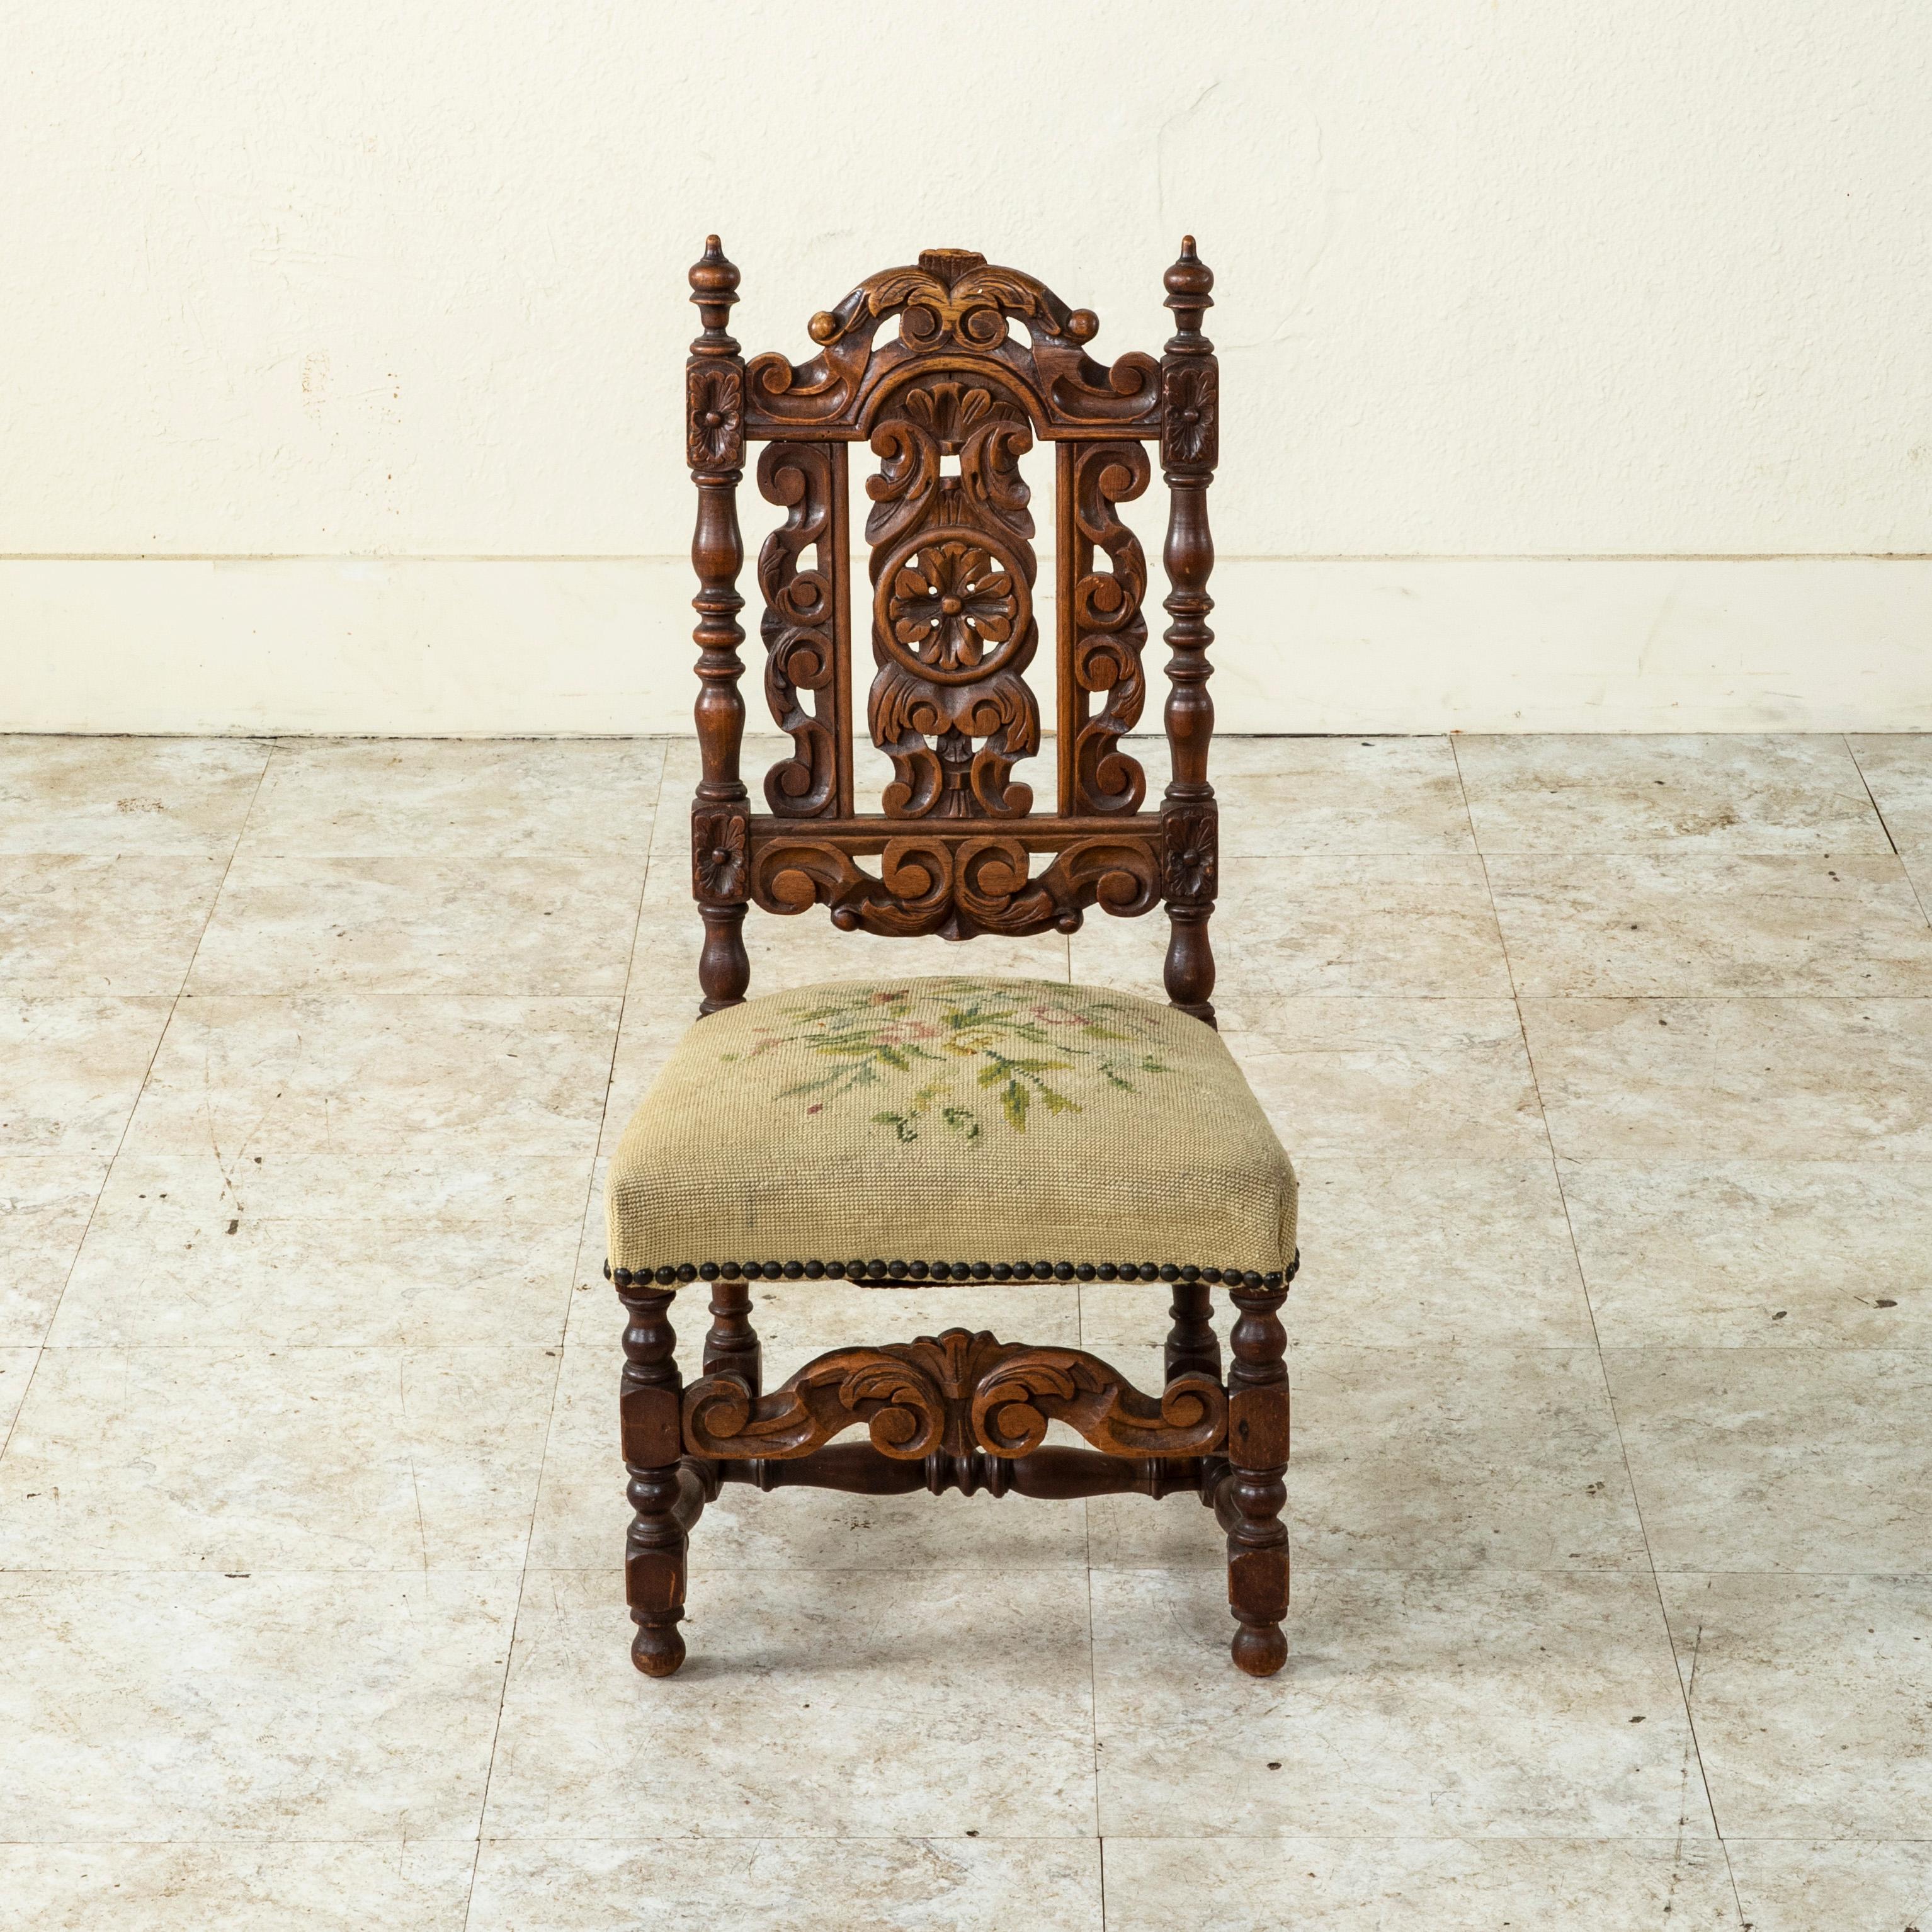 Dieser Kinderstuhl aus französischer Eiche aus dem späten 19. Jahrhundert hat eine Rückenlehne mit handgeschnitzten Rosetten an den Ecken, geschwungenen Blättern, einer zentralen Rosette und Endstücken. Der Sitz ruht auf gedrechselten Beinen, die